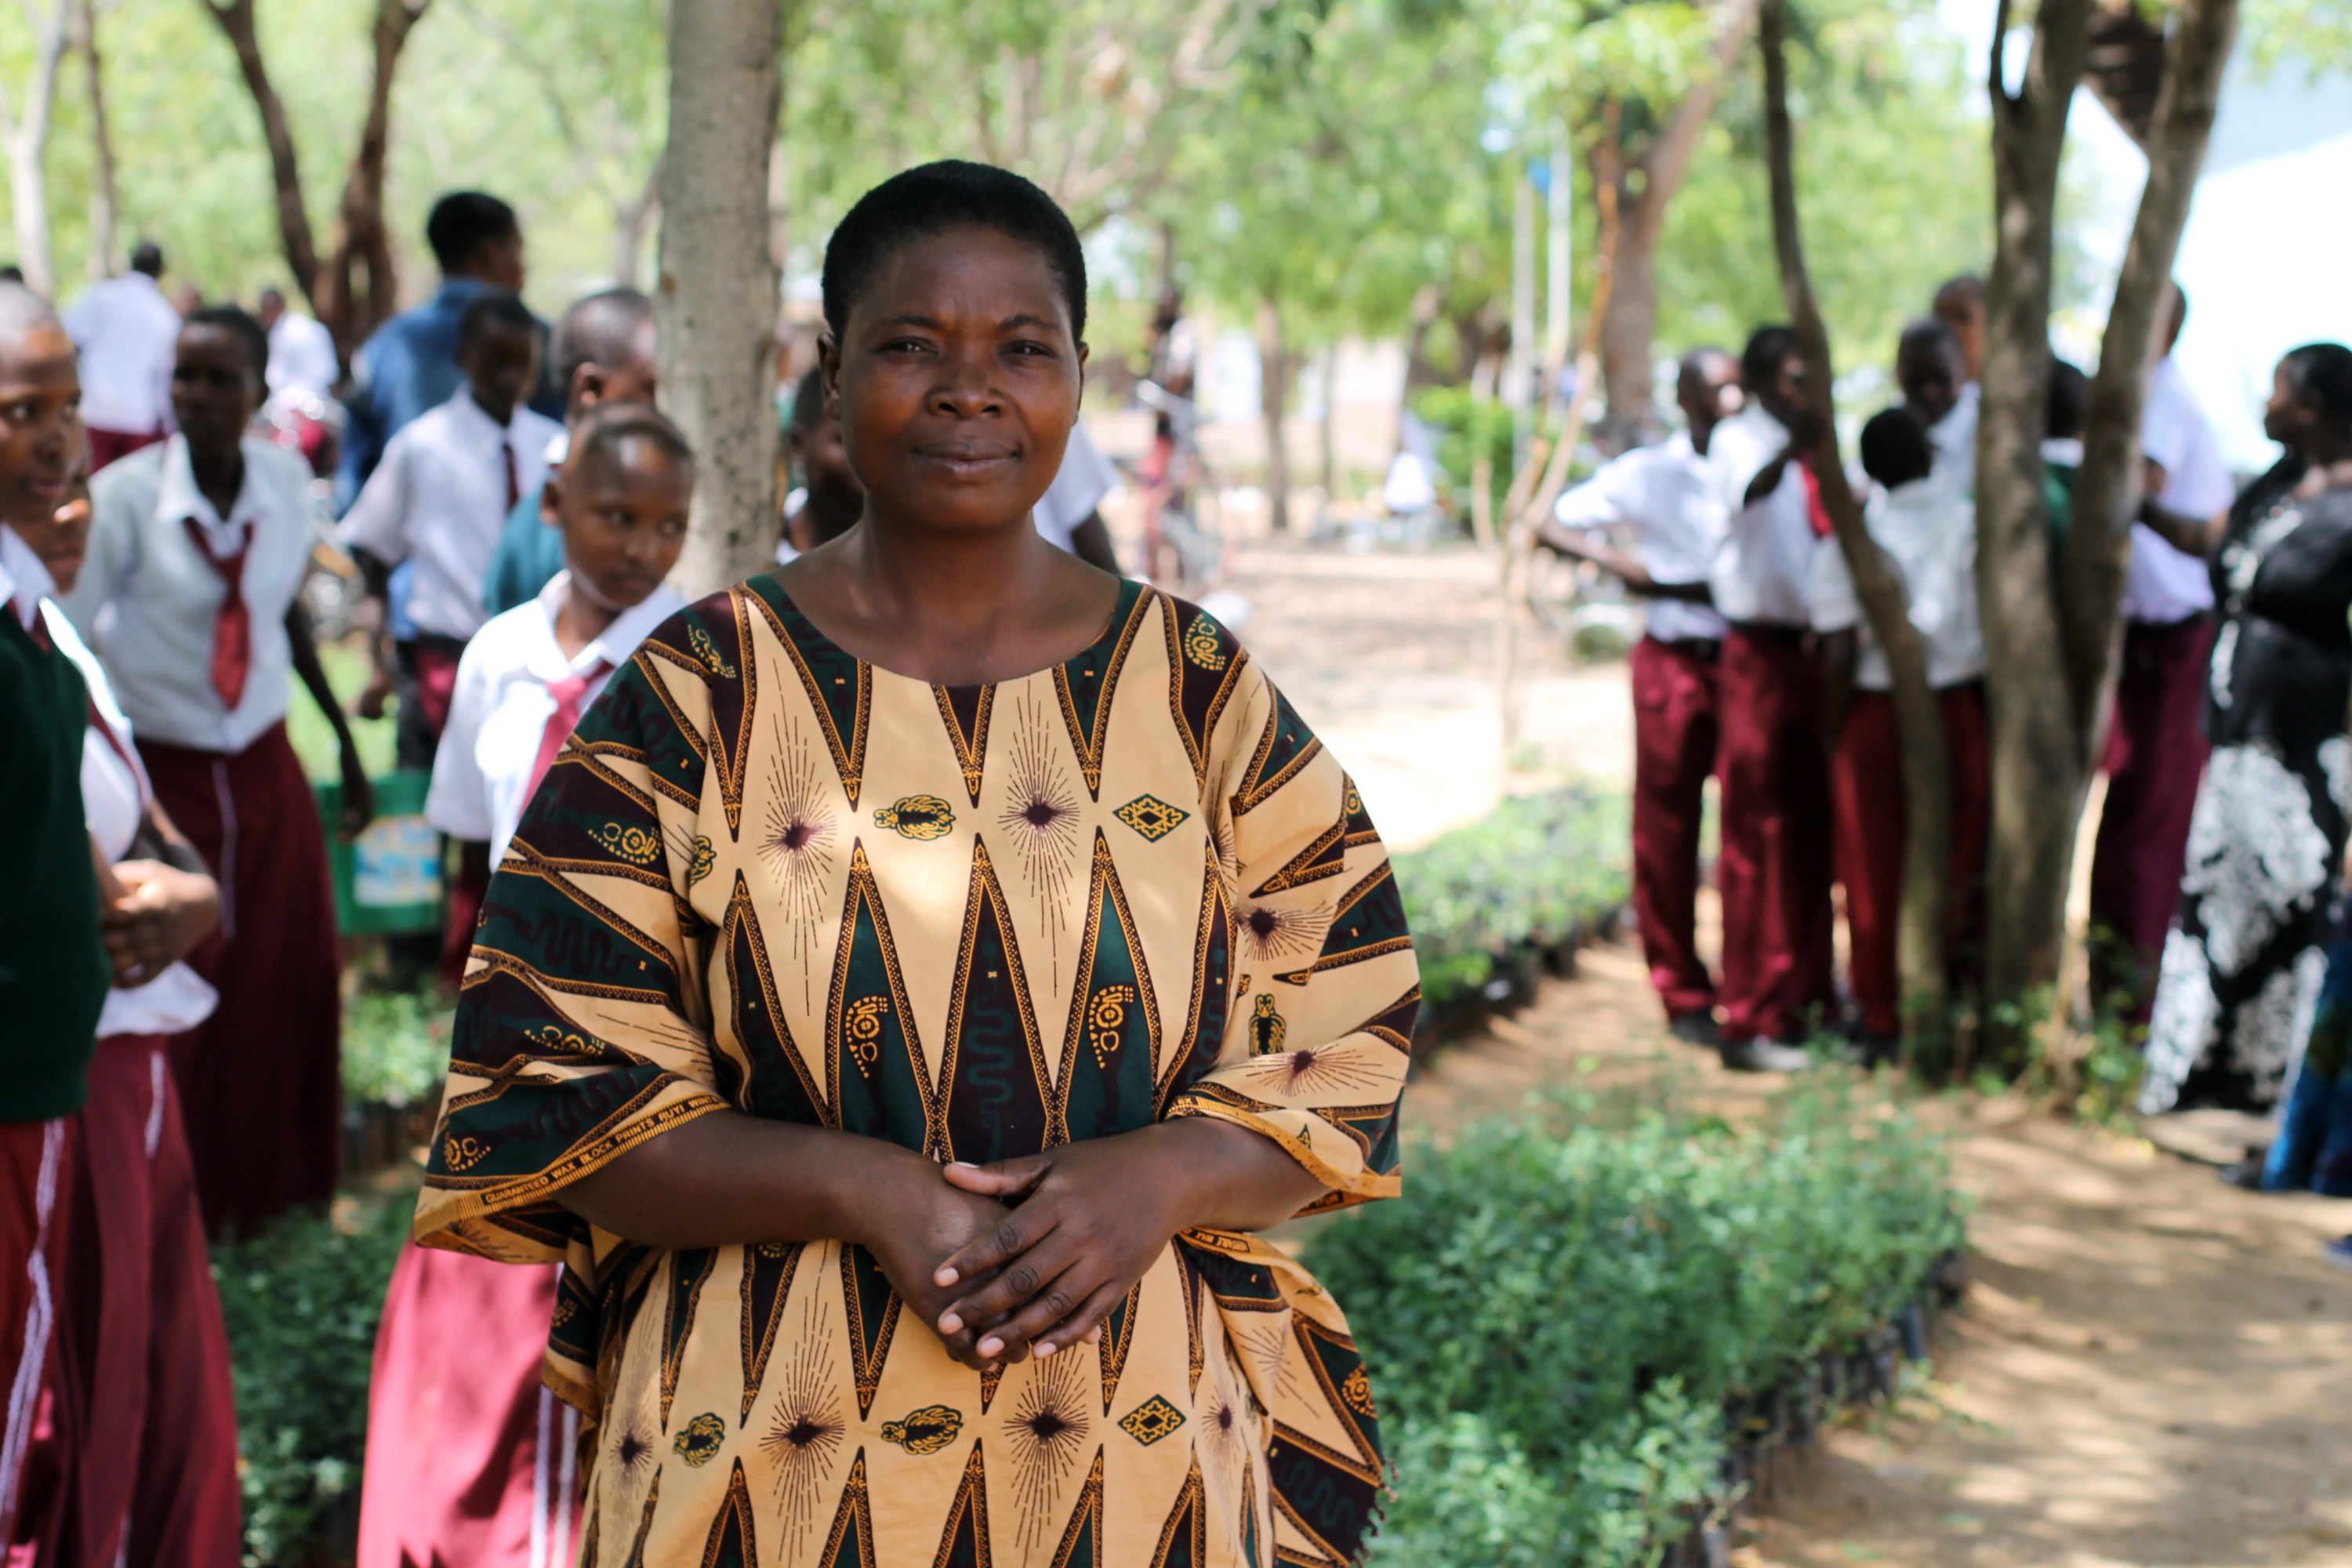 Songwan yläasteen johtava opettaja Buhoro Mipawa on ottanut ympäristökasvatuksen osaksi koulun ohjelmaa. Myös koulun ympäristöön on vuosien kuluessa istutettu puita.